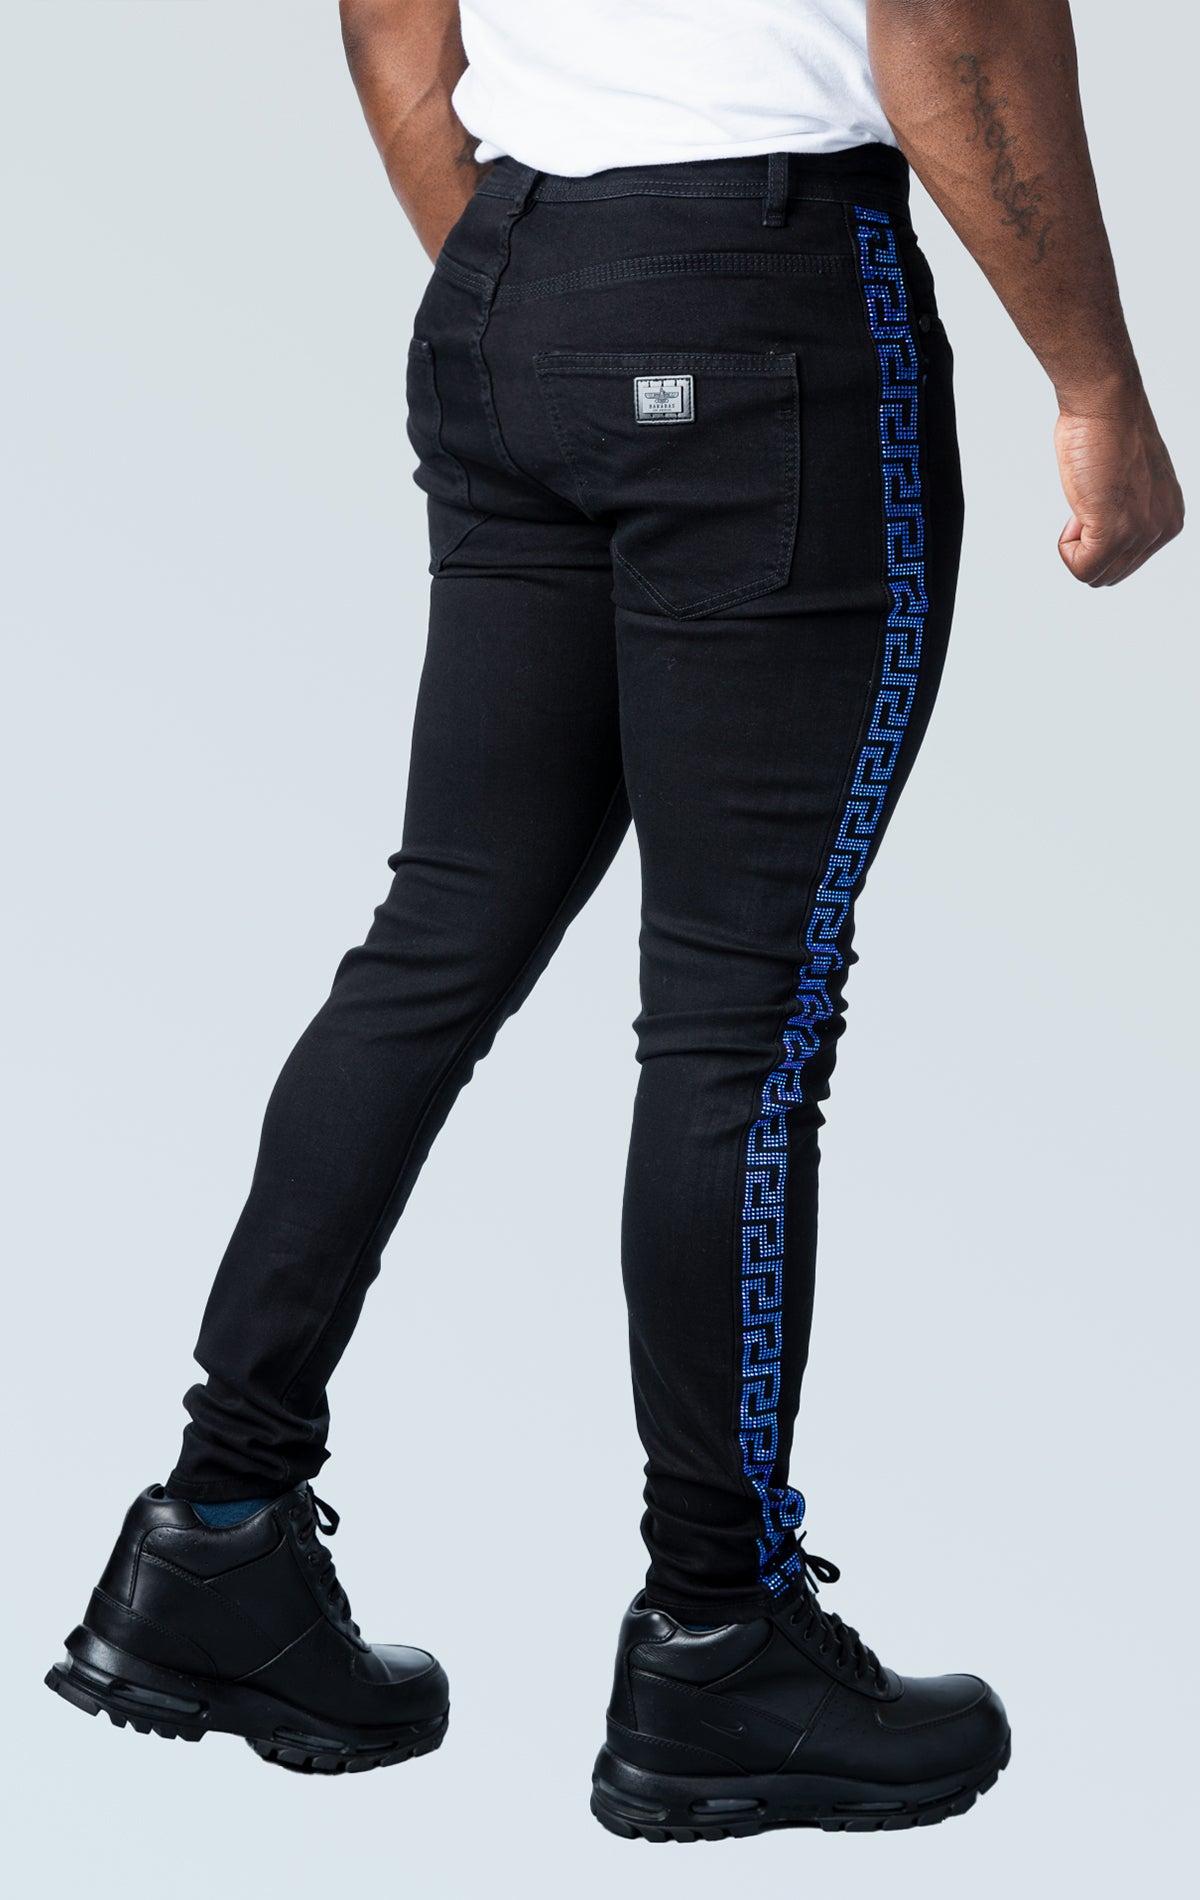 Black premium denim pants with unique blue sparkles side strip design.